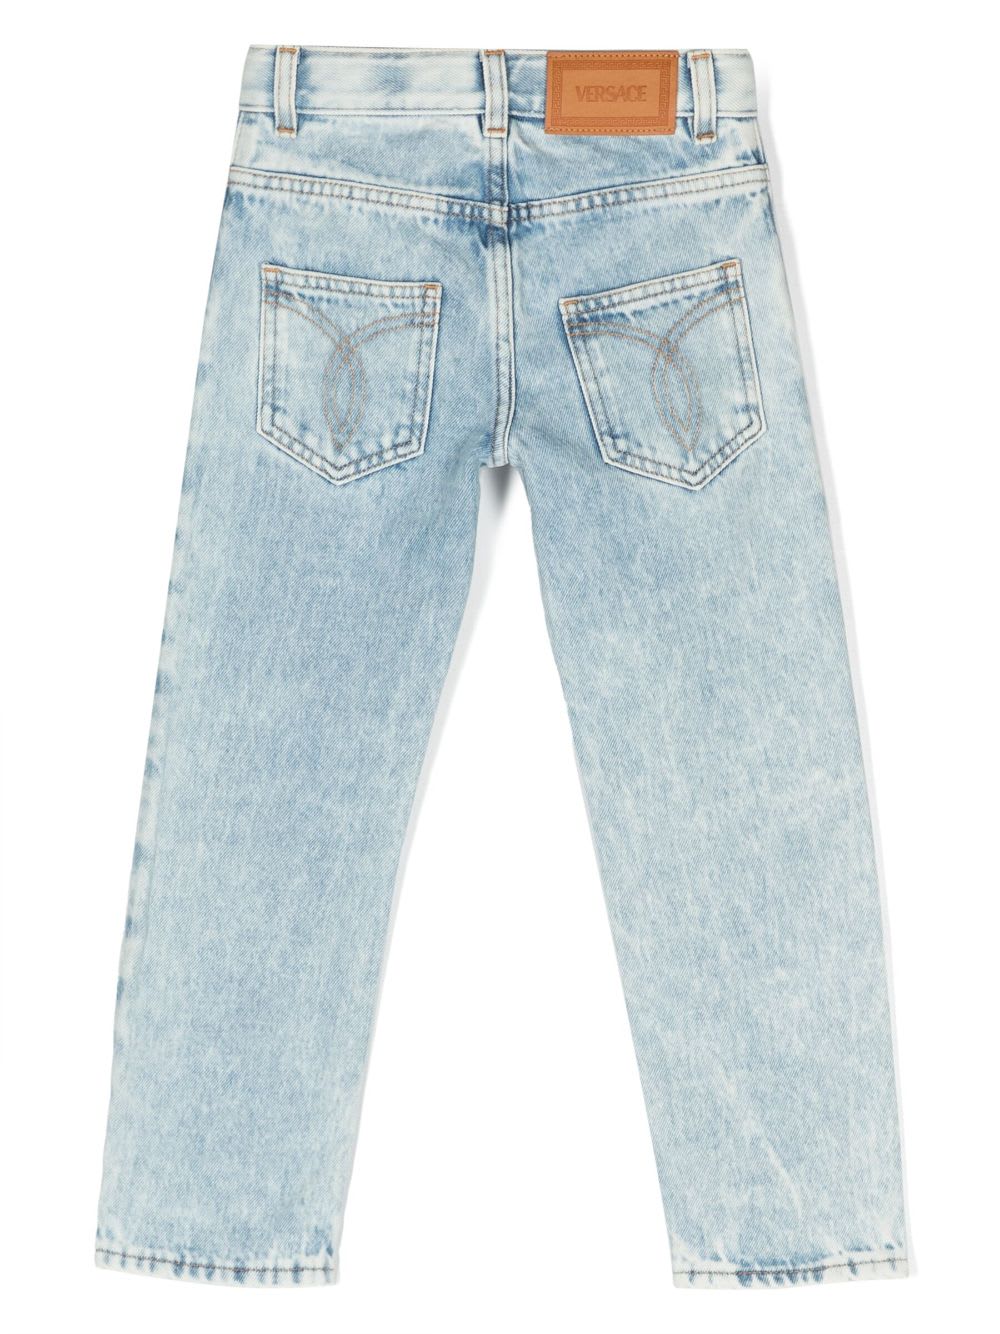 Shop Versace Jeans Blu Chiaro In Denim Di Cotone Stretch Bambino